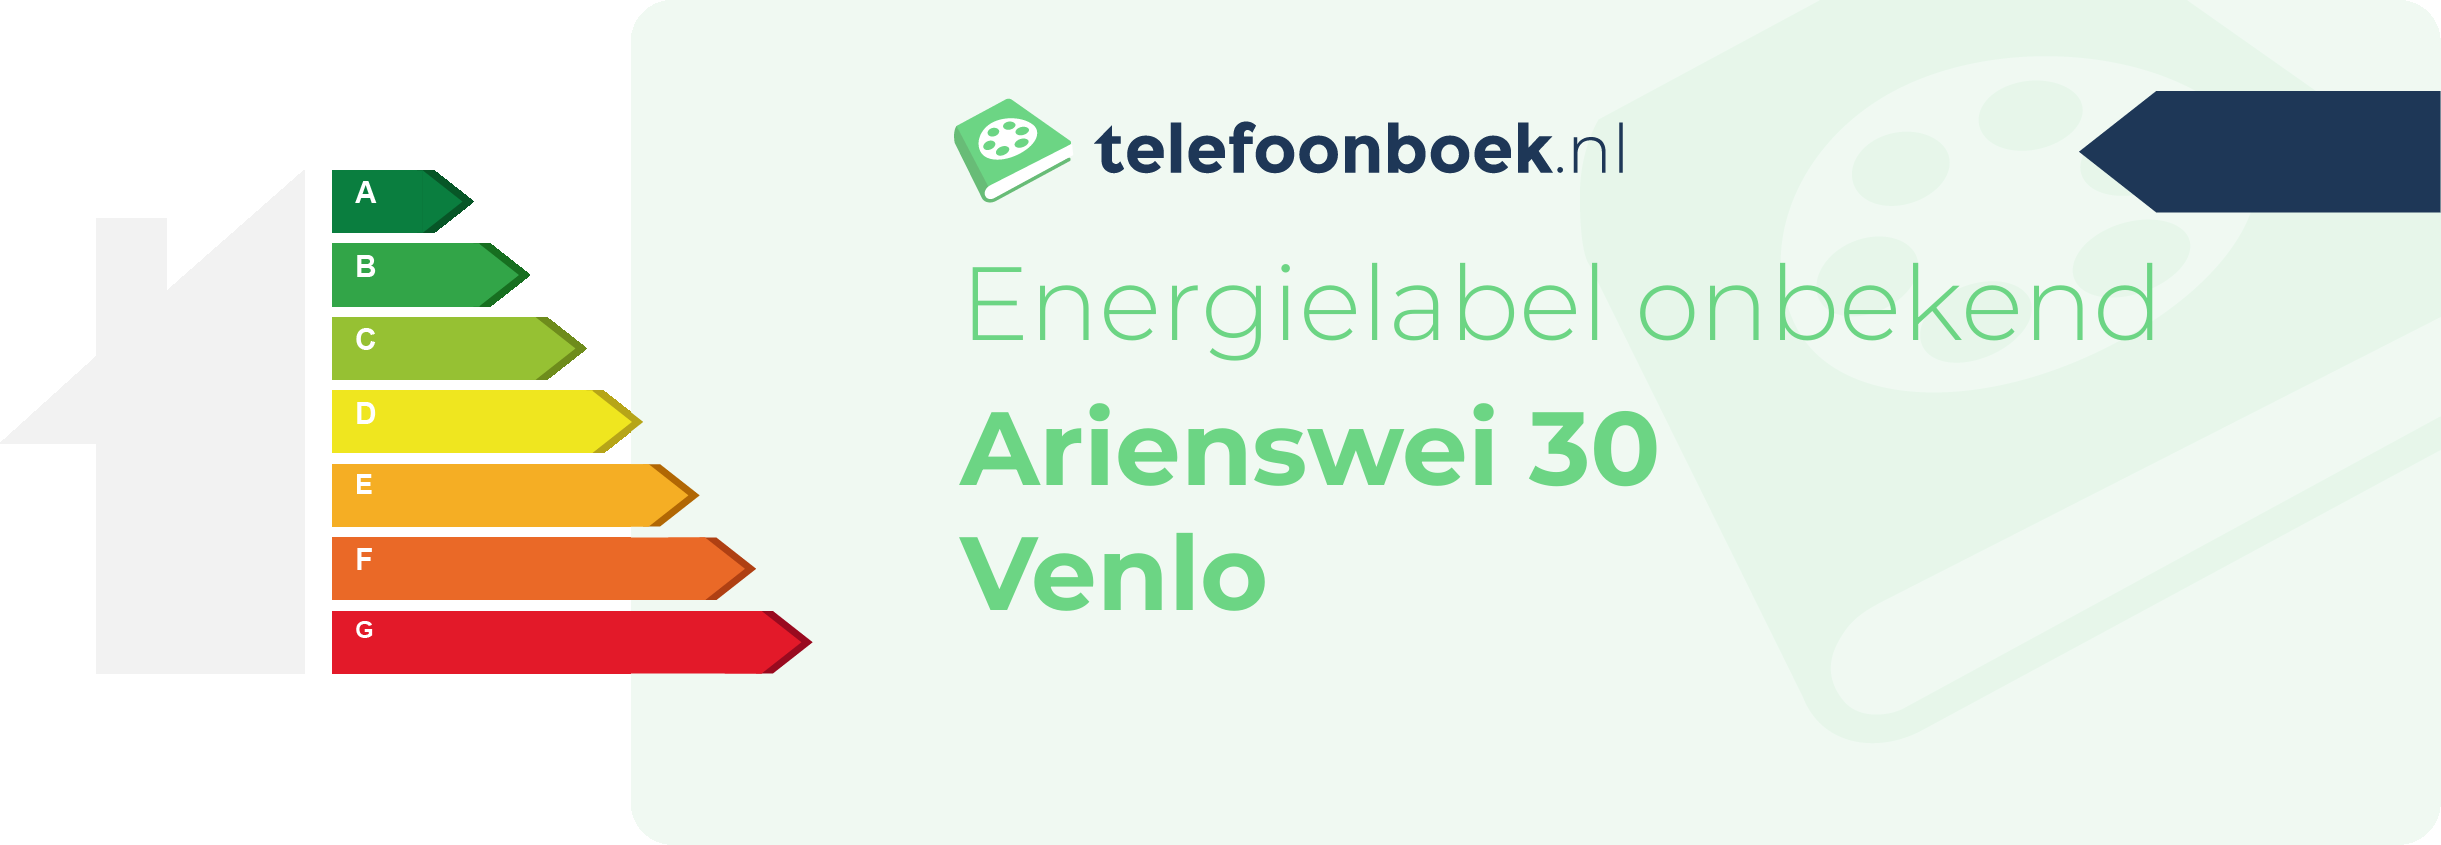 Energielabel Arienswei 30 Venlo